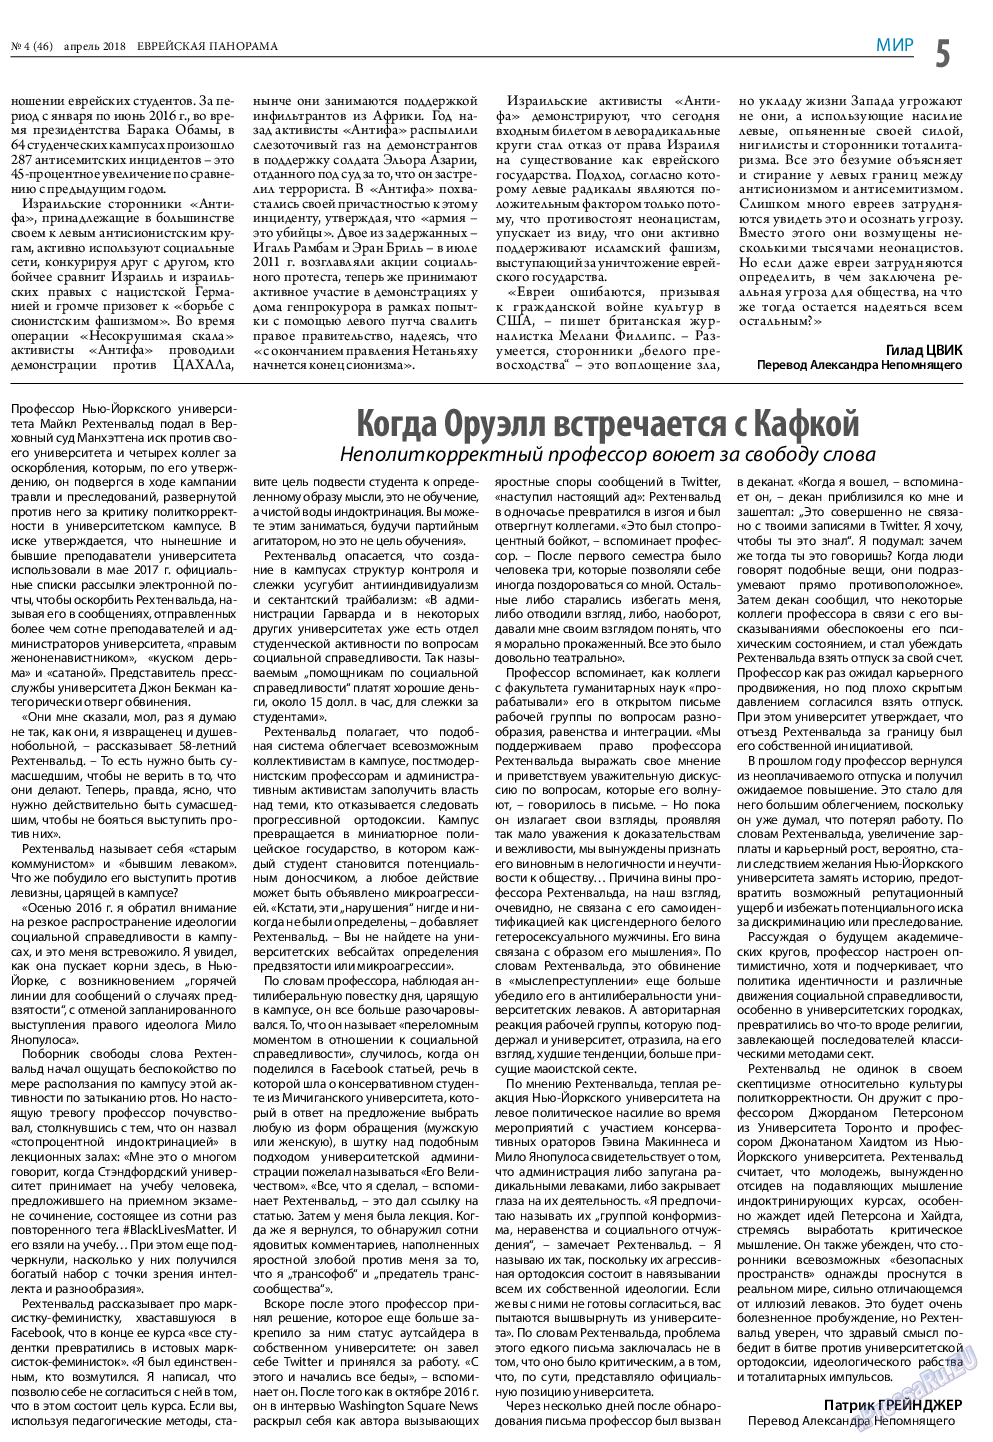 Еврейская панорама (газета). 2018 год, номер 4, стр. 5